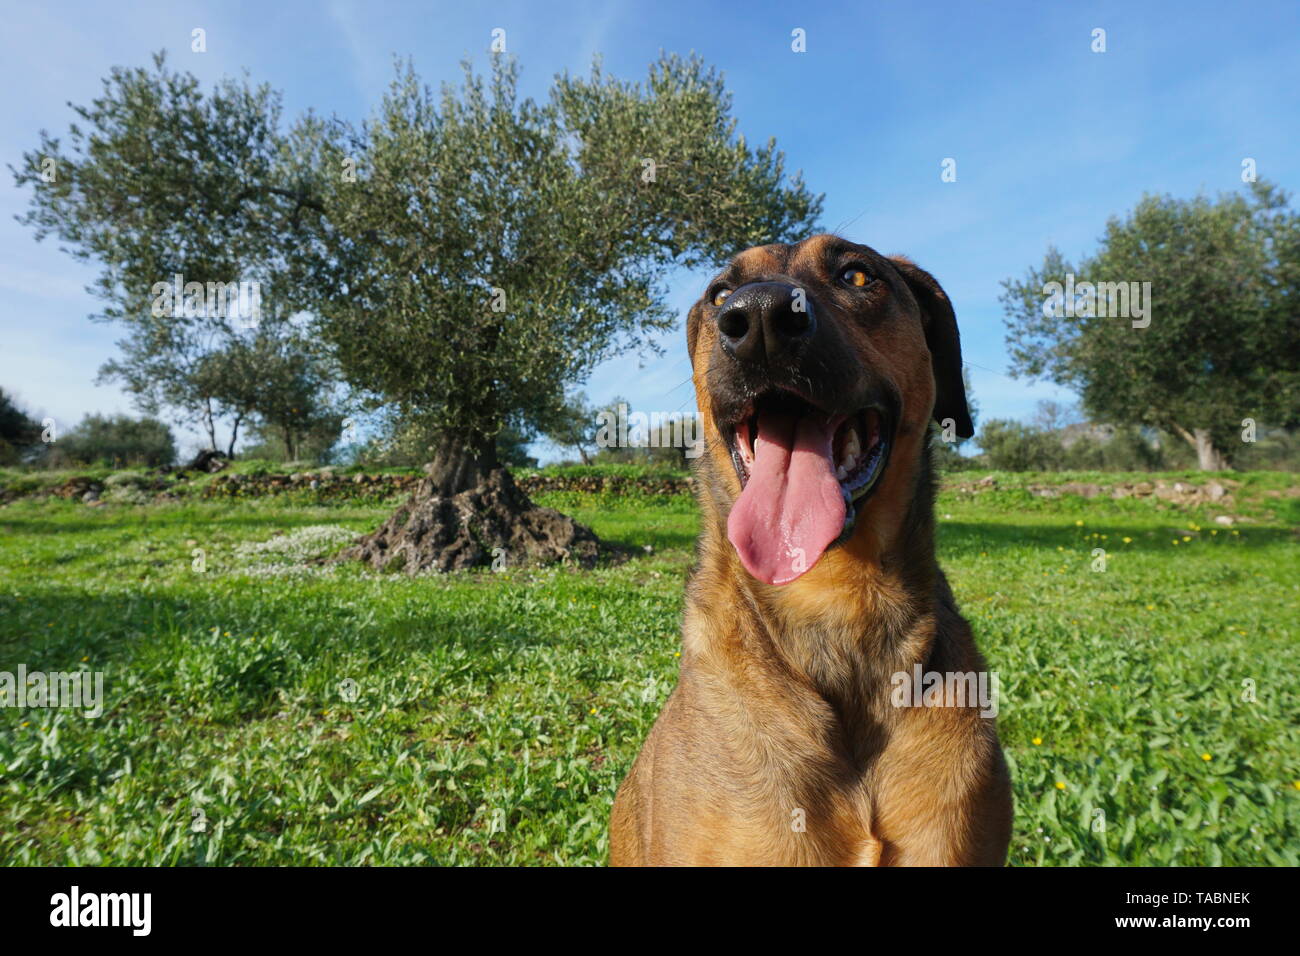 Drôle de visage d'un chien en premier plan avec olivier en arrière-plan, Malinois Labrador chien de race mixte, Espagne Banque D'Images